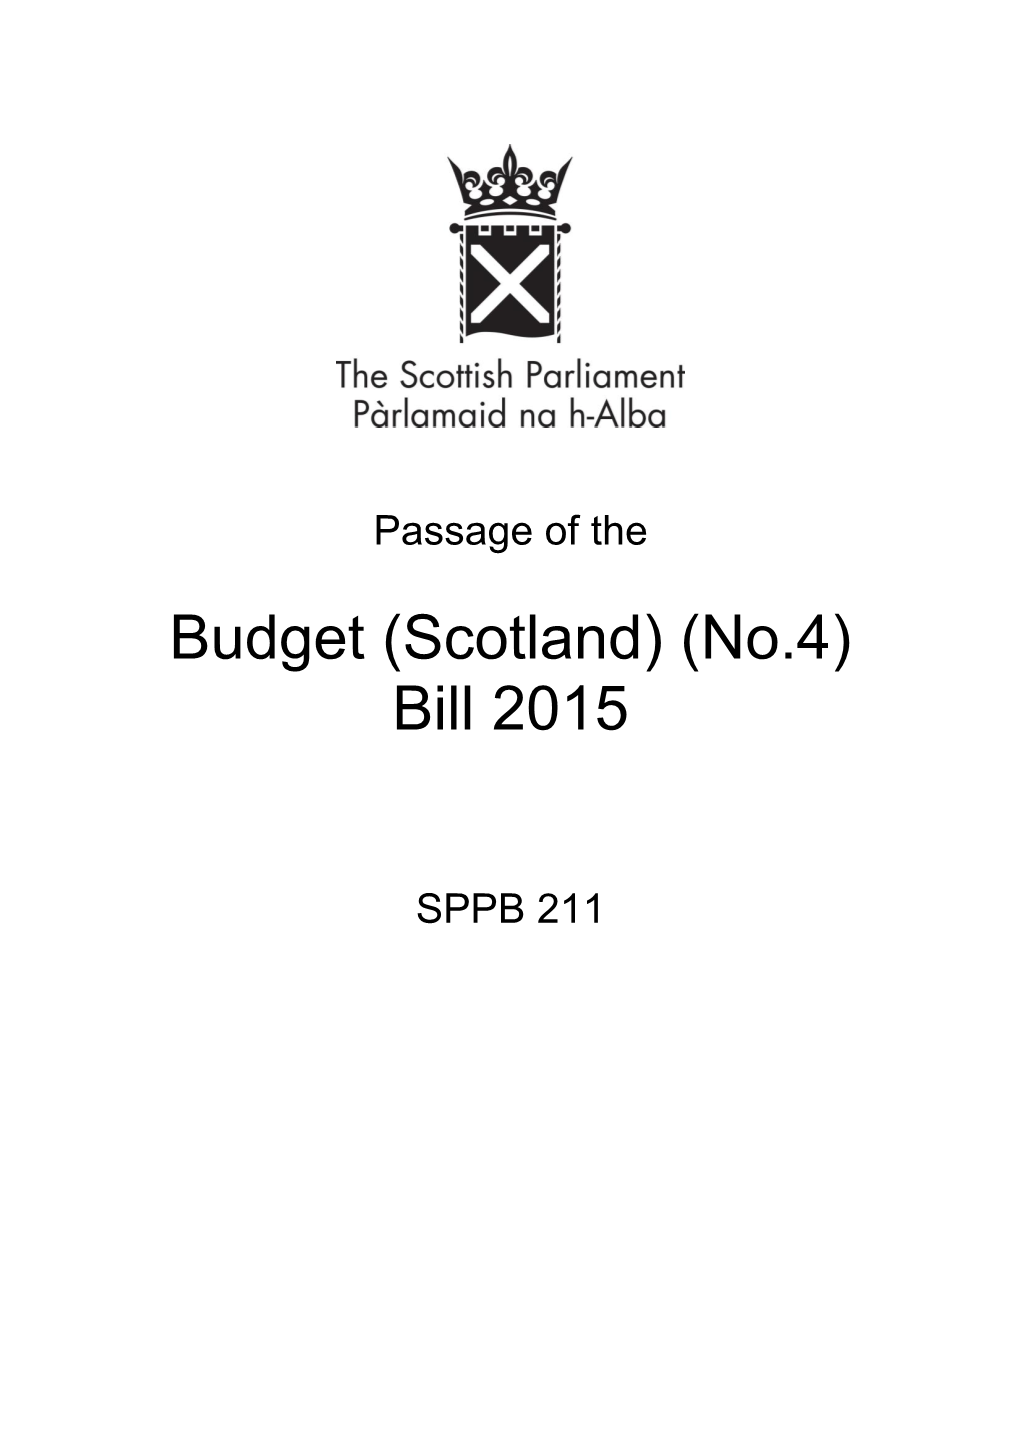 Budget (Scotland) (No.4) Bill 2015